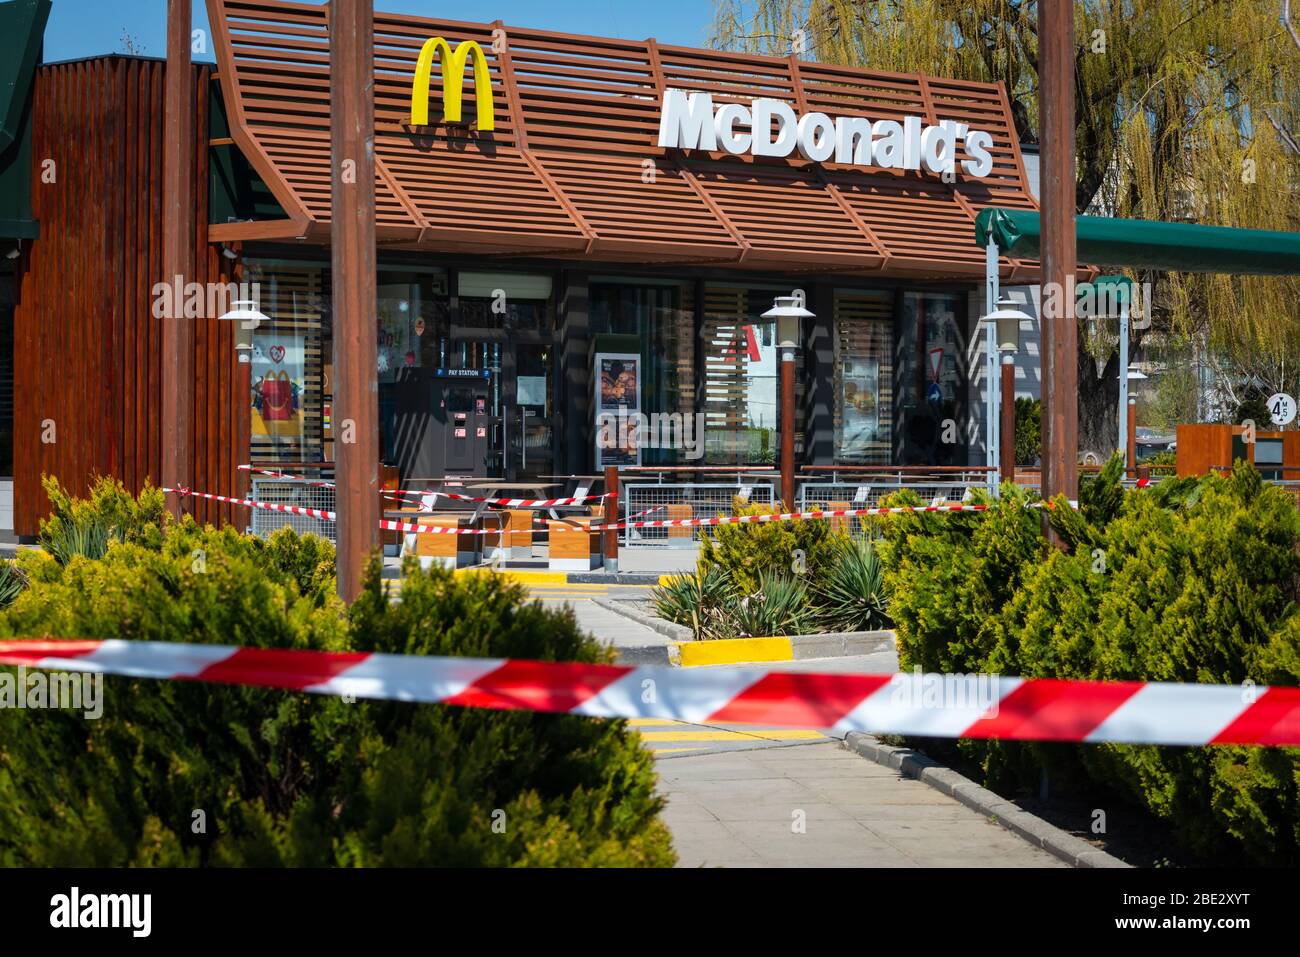 Ruban rayé rouge et blanc à la fermeture pour les affaires normales le restaurant de restauration rapide McDonald's permettant seulement les repas à emporter au drive-in ou au drive-in en raison de la propagation du coronavirus pandémie de Covid-19 à Sofia, Bulgarie en avril 2020 Banque D'Images